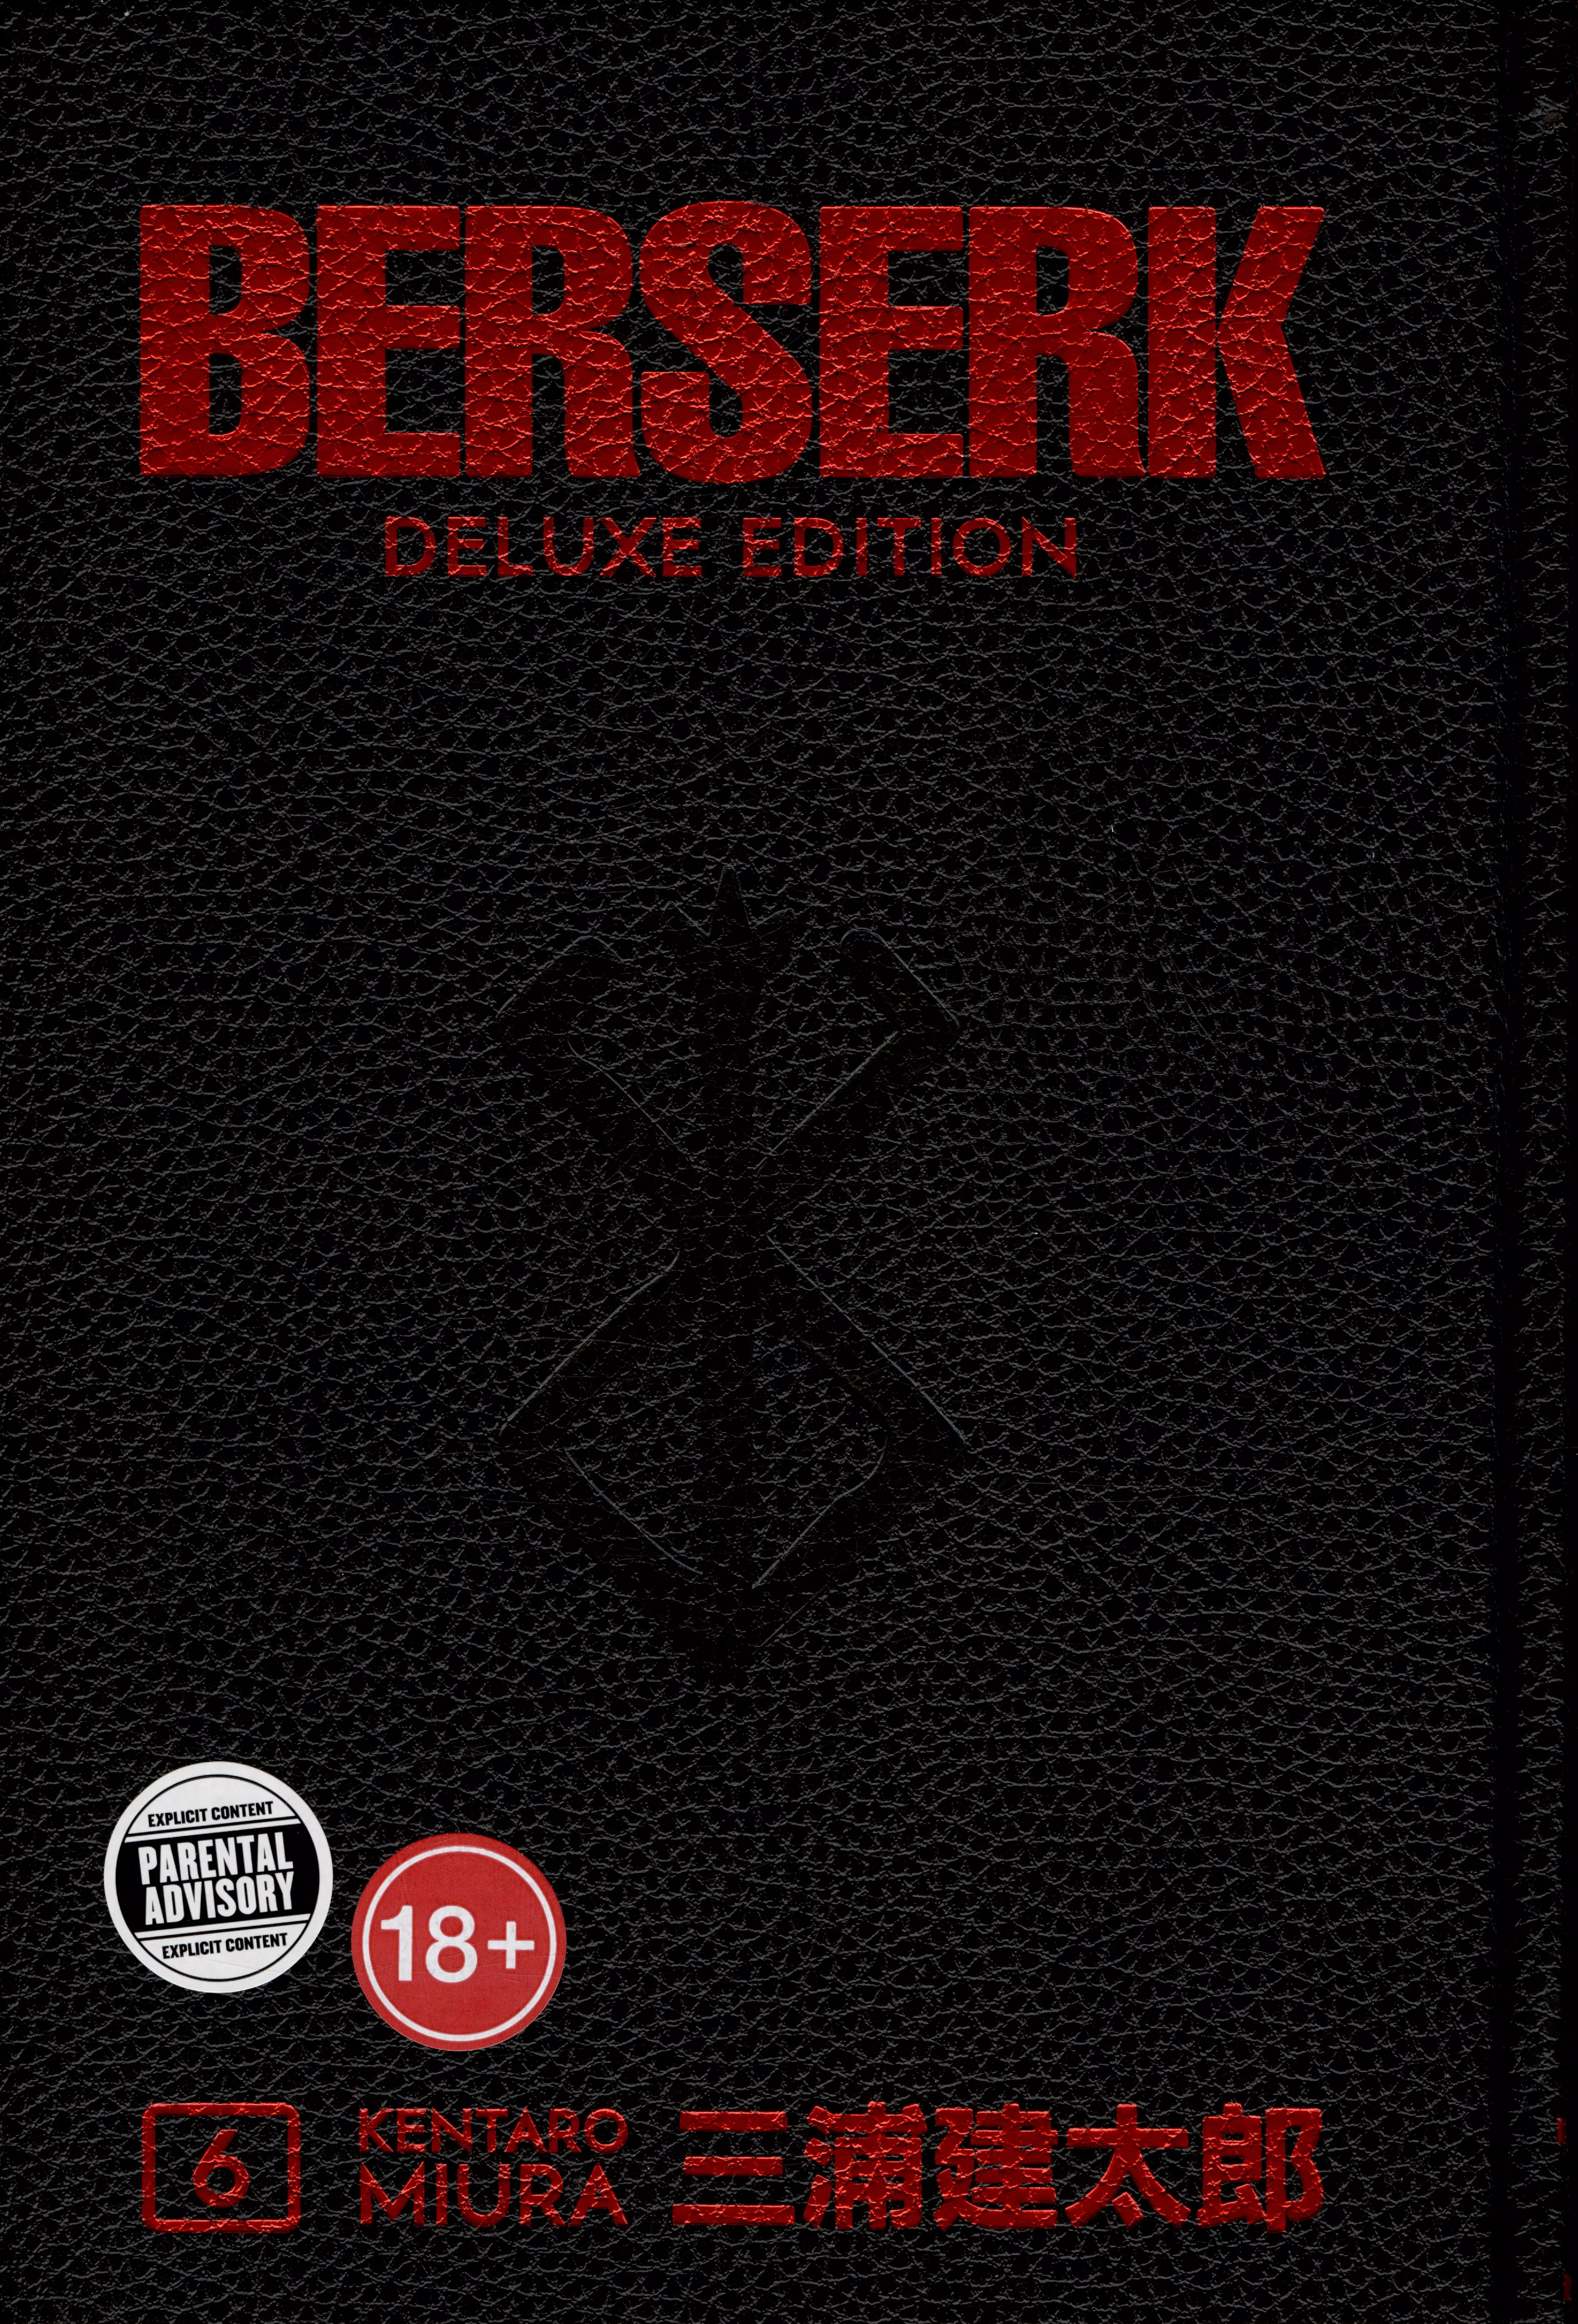 Berserk Deluxe Volue 6